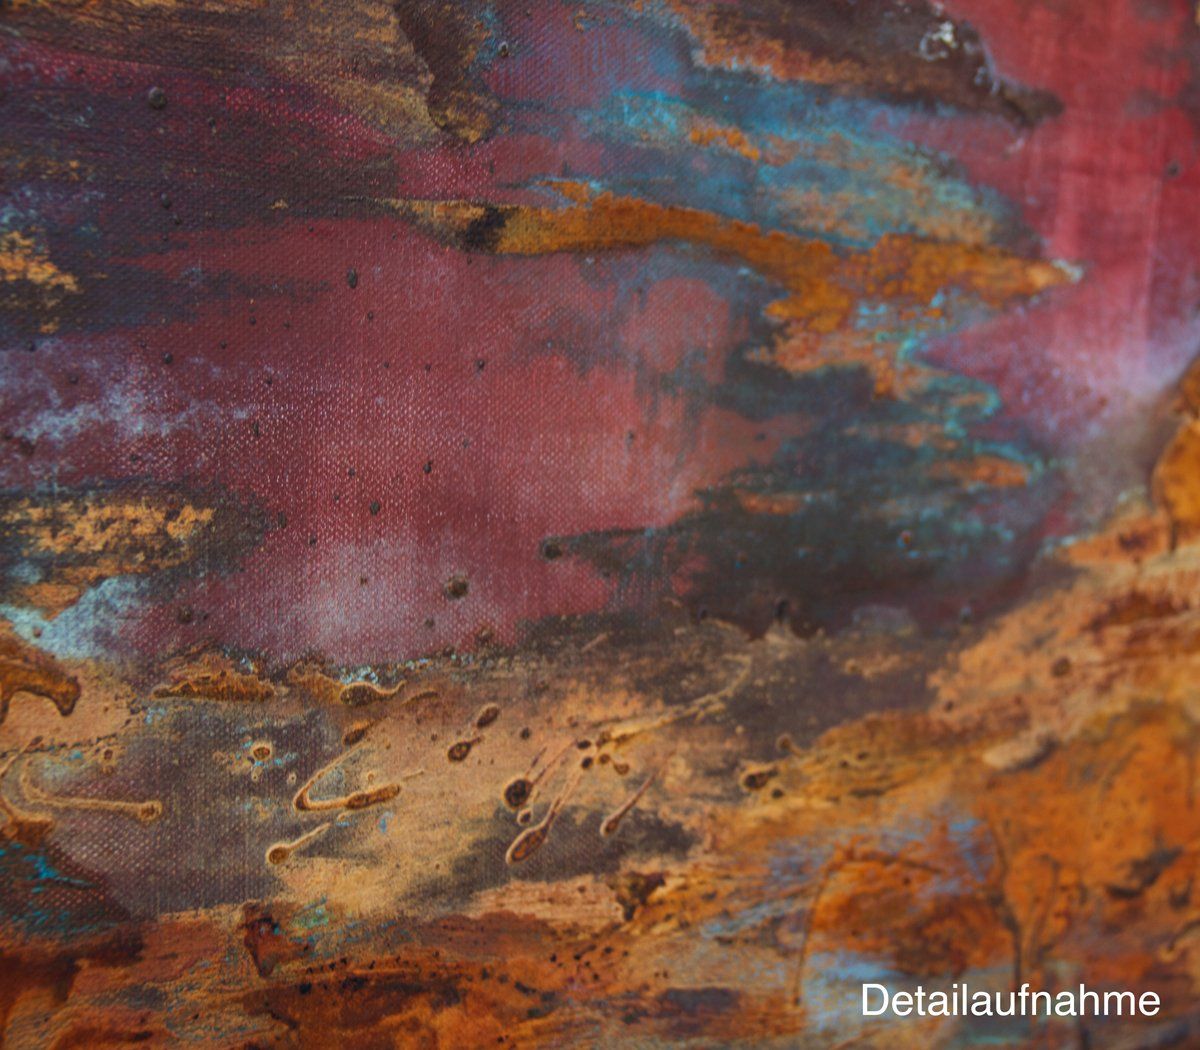 Landschaft in Rost und Rot. Gemälde „Neva“ Maße: 80 x 100 cm, Tiefe 4,5 cm  Material: Acryl, Rost, blaue Patina auf Eisen-Grundierung, Firnis  Malgrund: Leinwand auf Keilrahmen